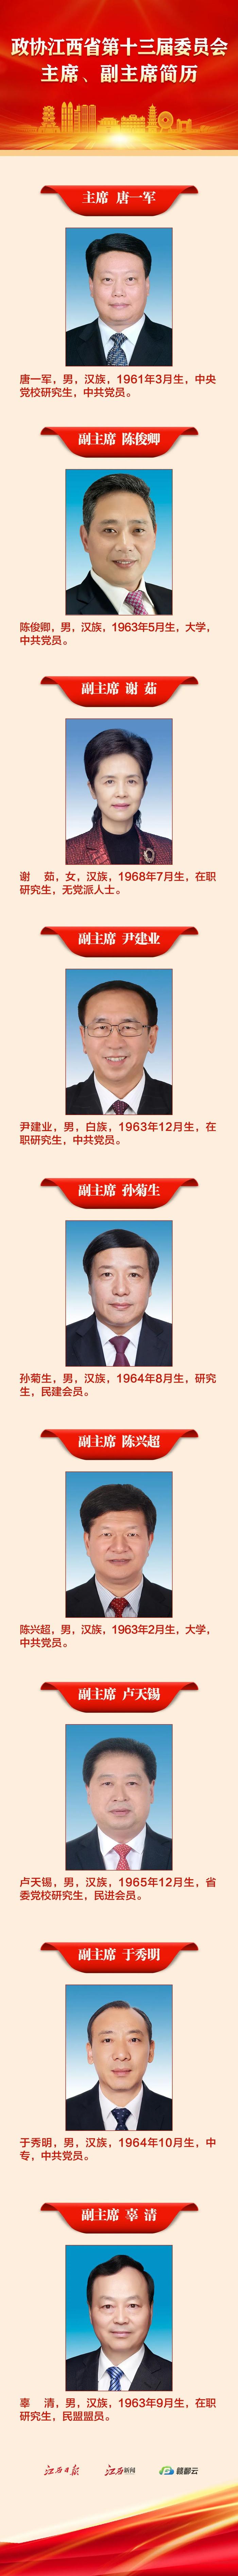 政协江西省第十三届委员会主席、副主席简历